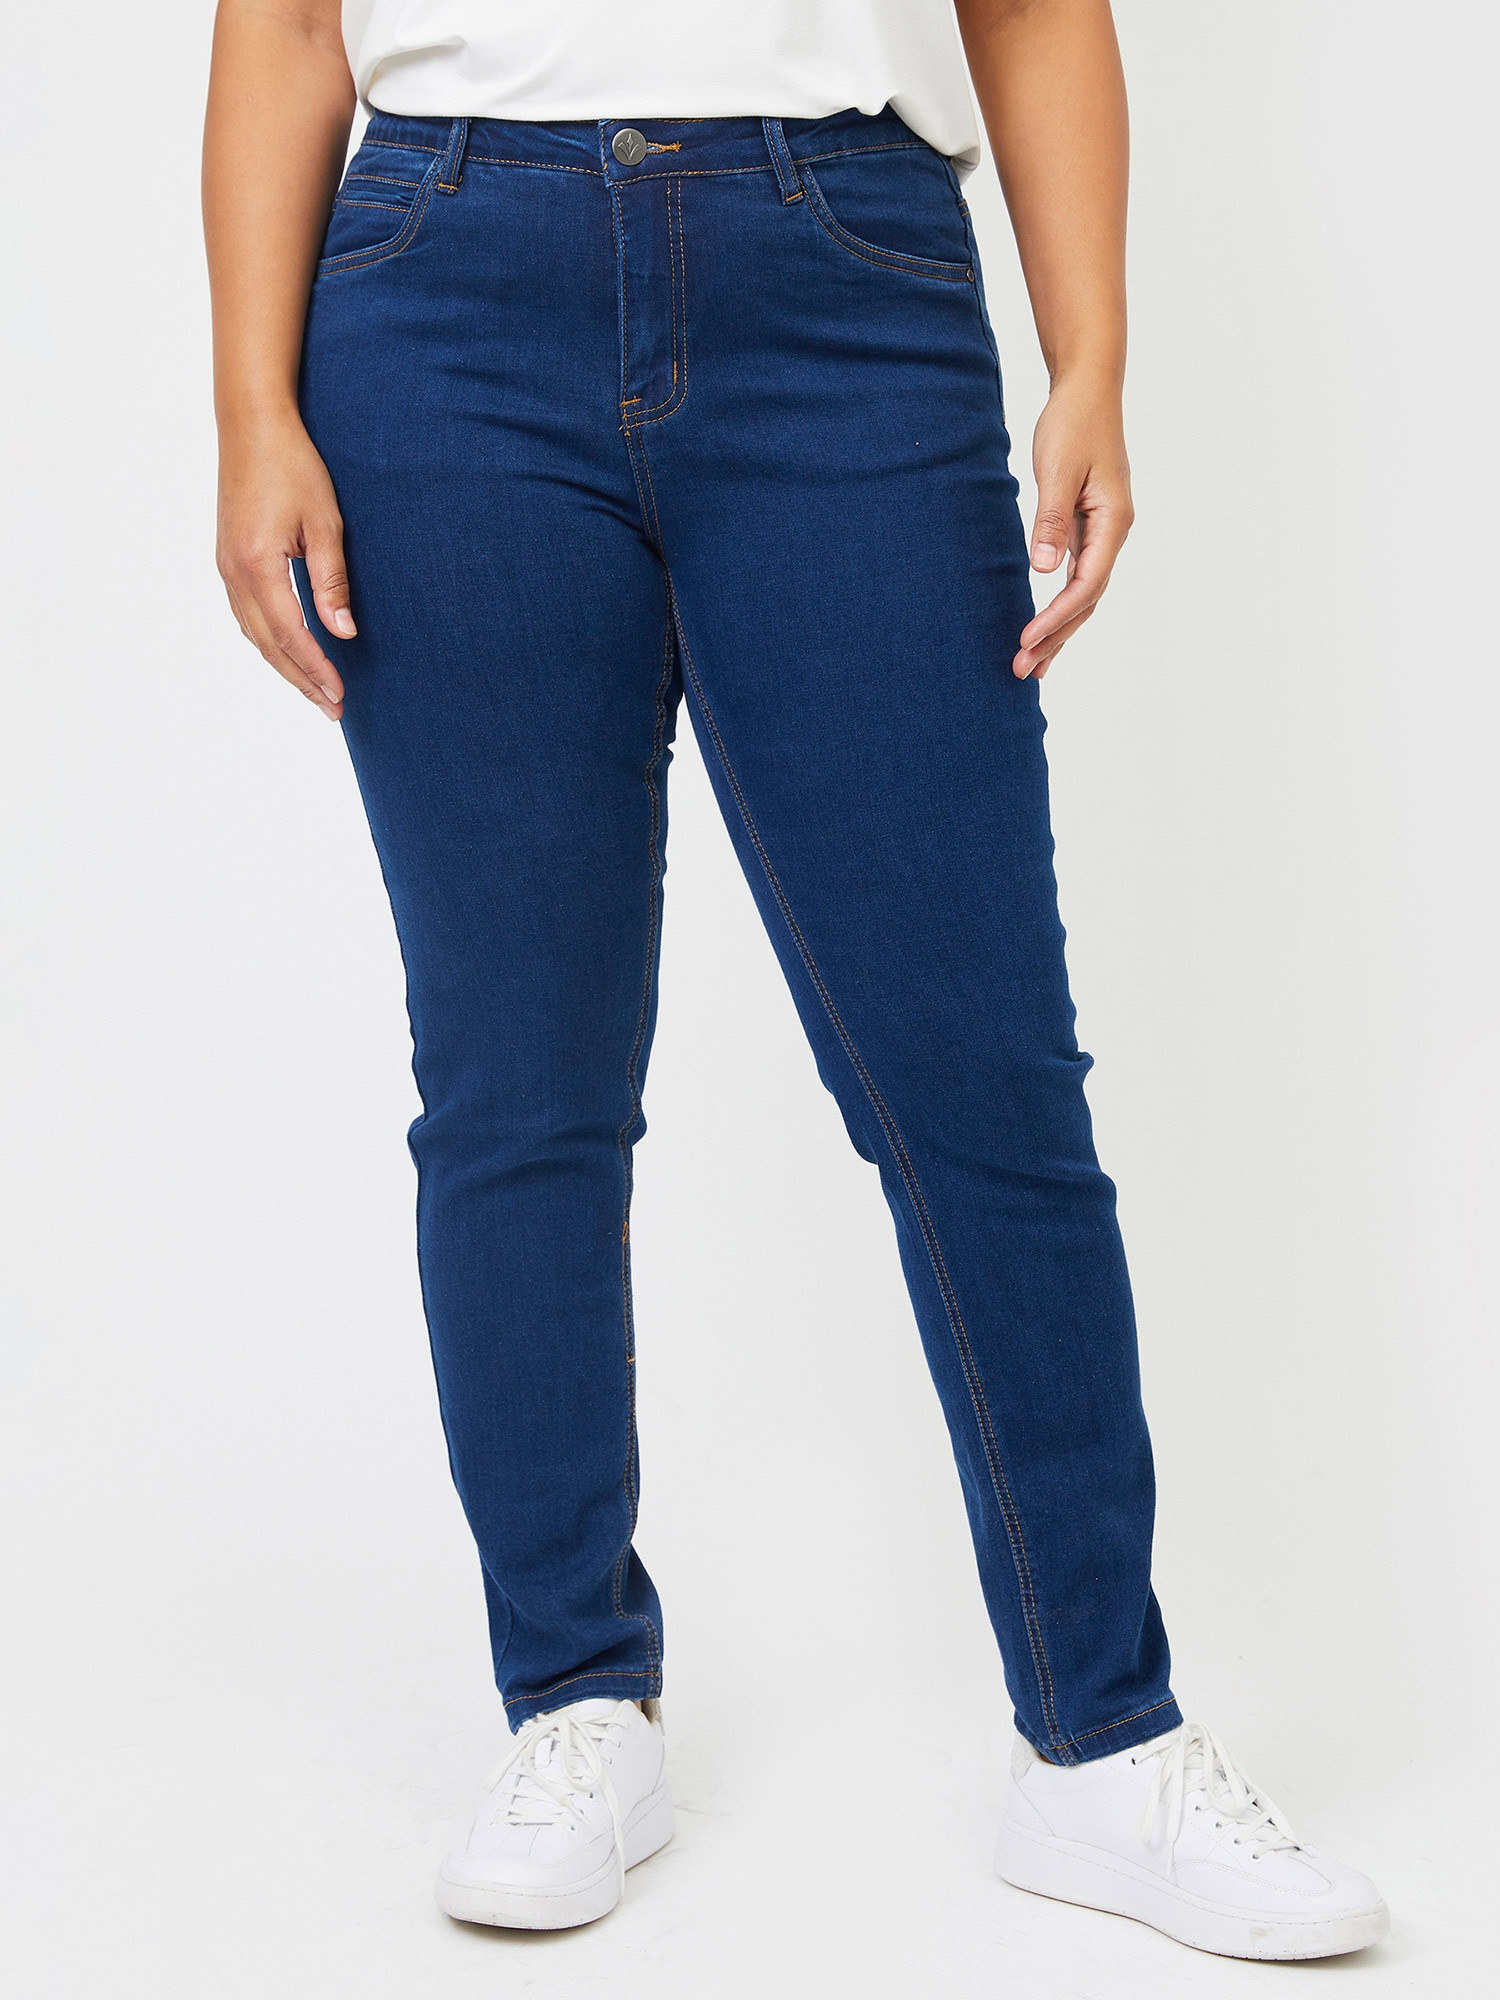 MILAN - Mørkeblå jeans